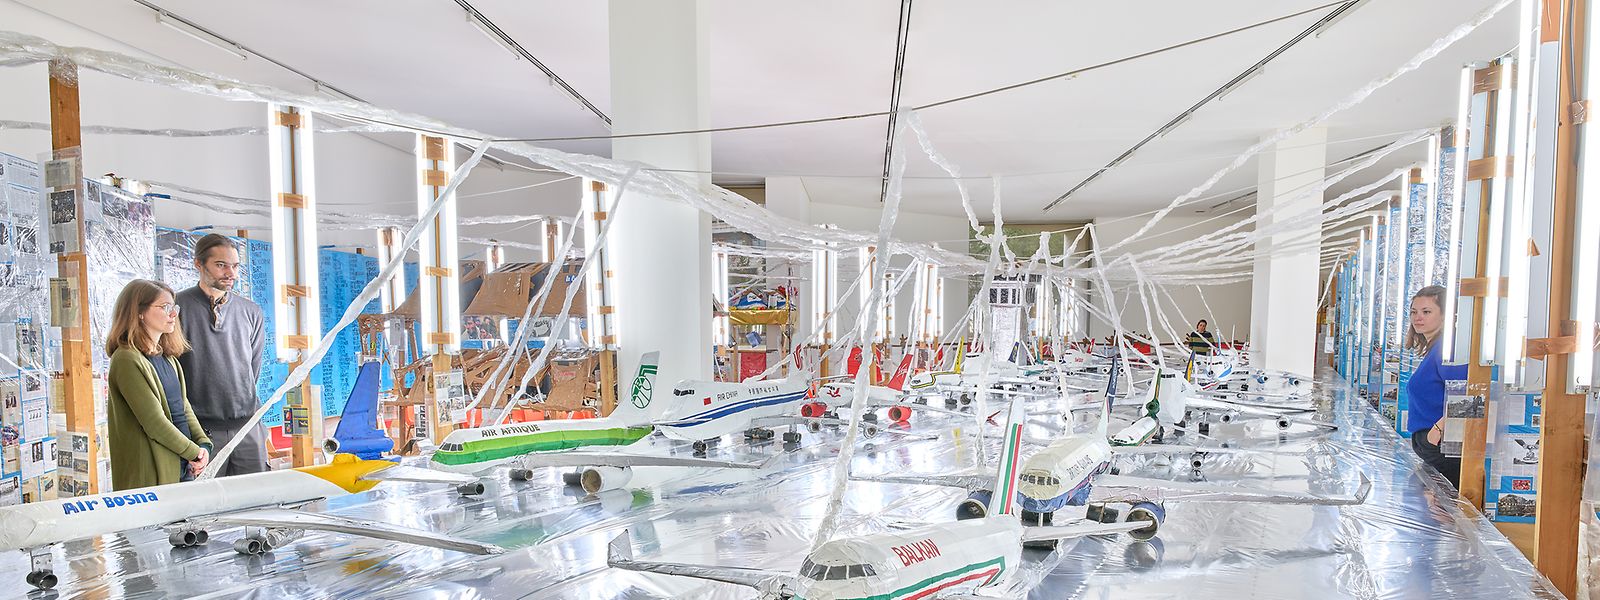 Eine ganze Galerie ist Thomas Hirschhorns "Flugplatz Welt/ World Airport" vorbehalten.